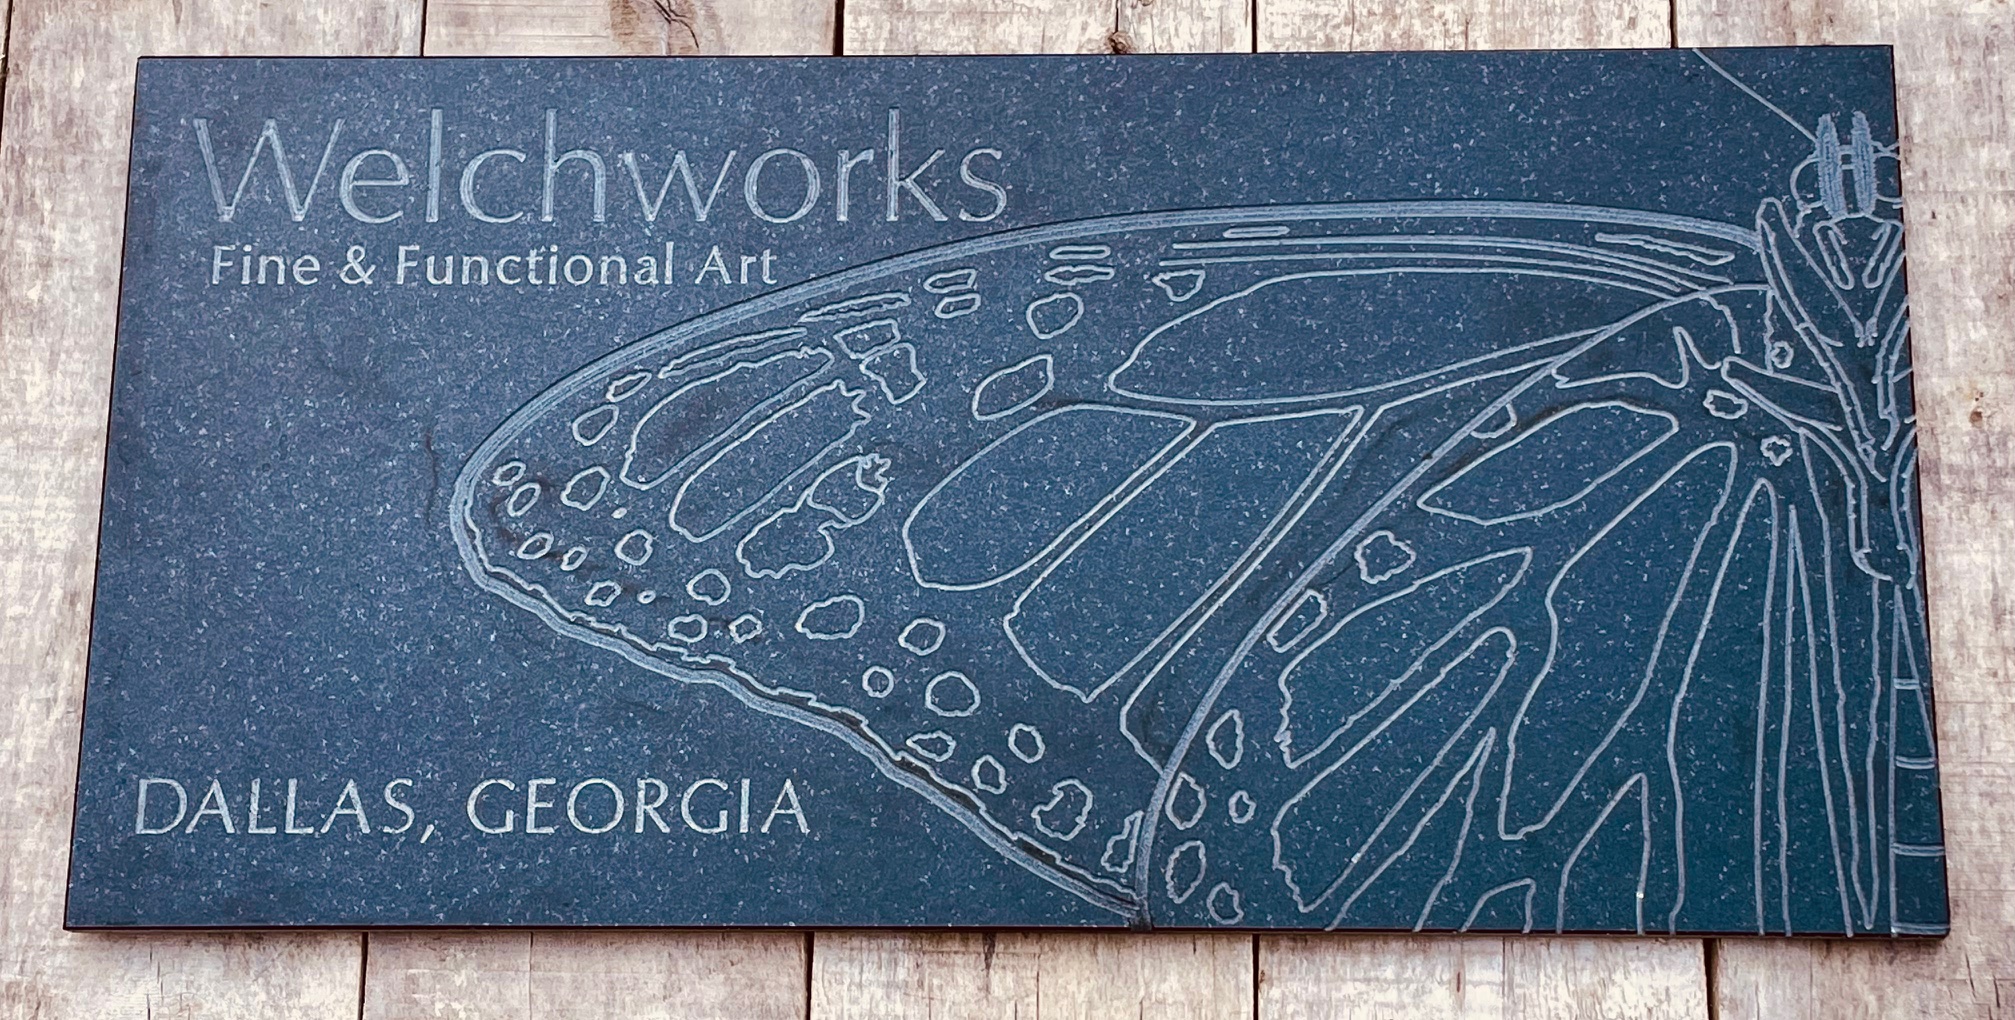 Welchworks sign engraved on black granite - 24" x 12".